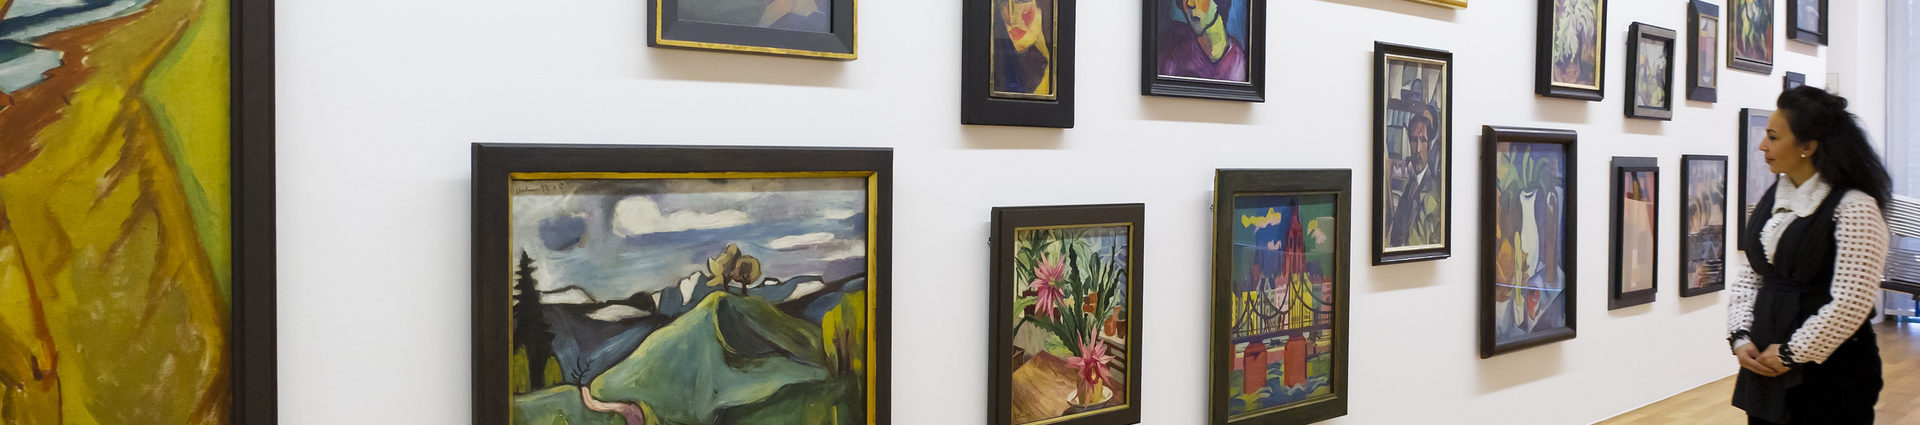 Verschiedene Ölgemälde an einer Wand im Kunstmuseum. Vor der Wand steht eine Frau, die die Bilder betrachtet.